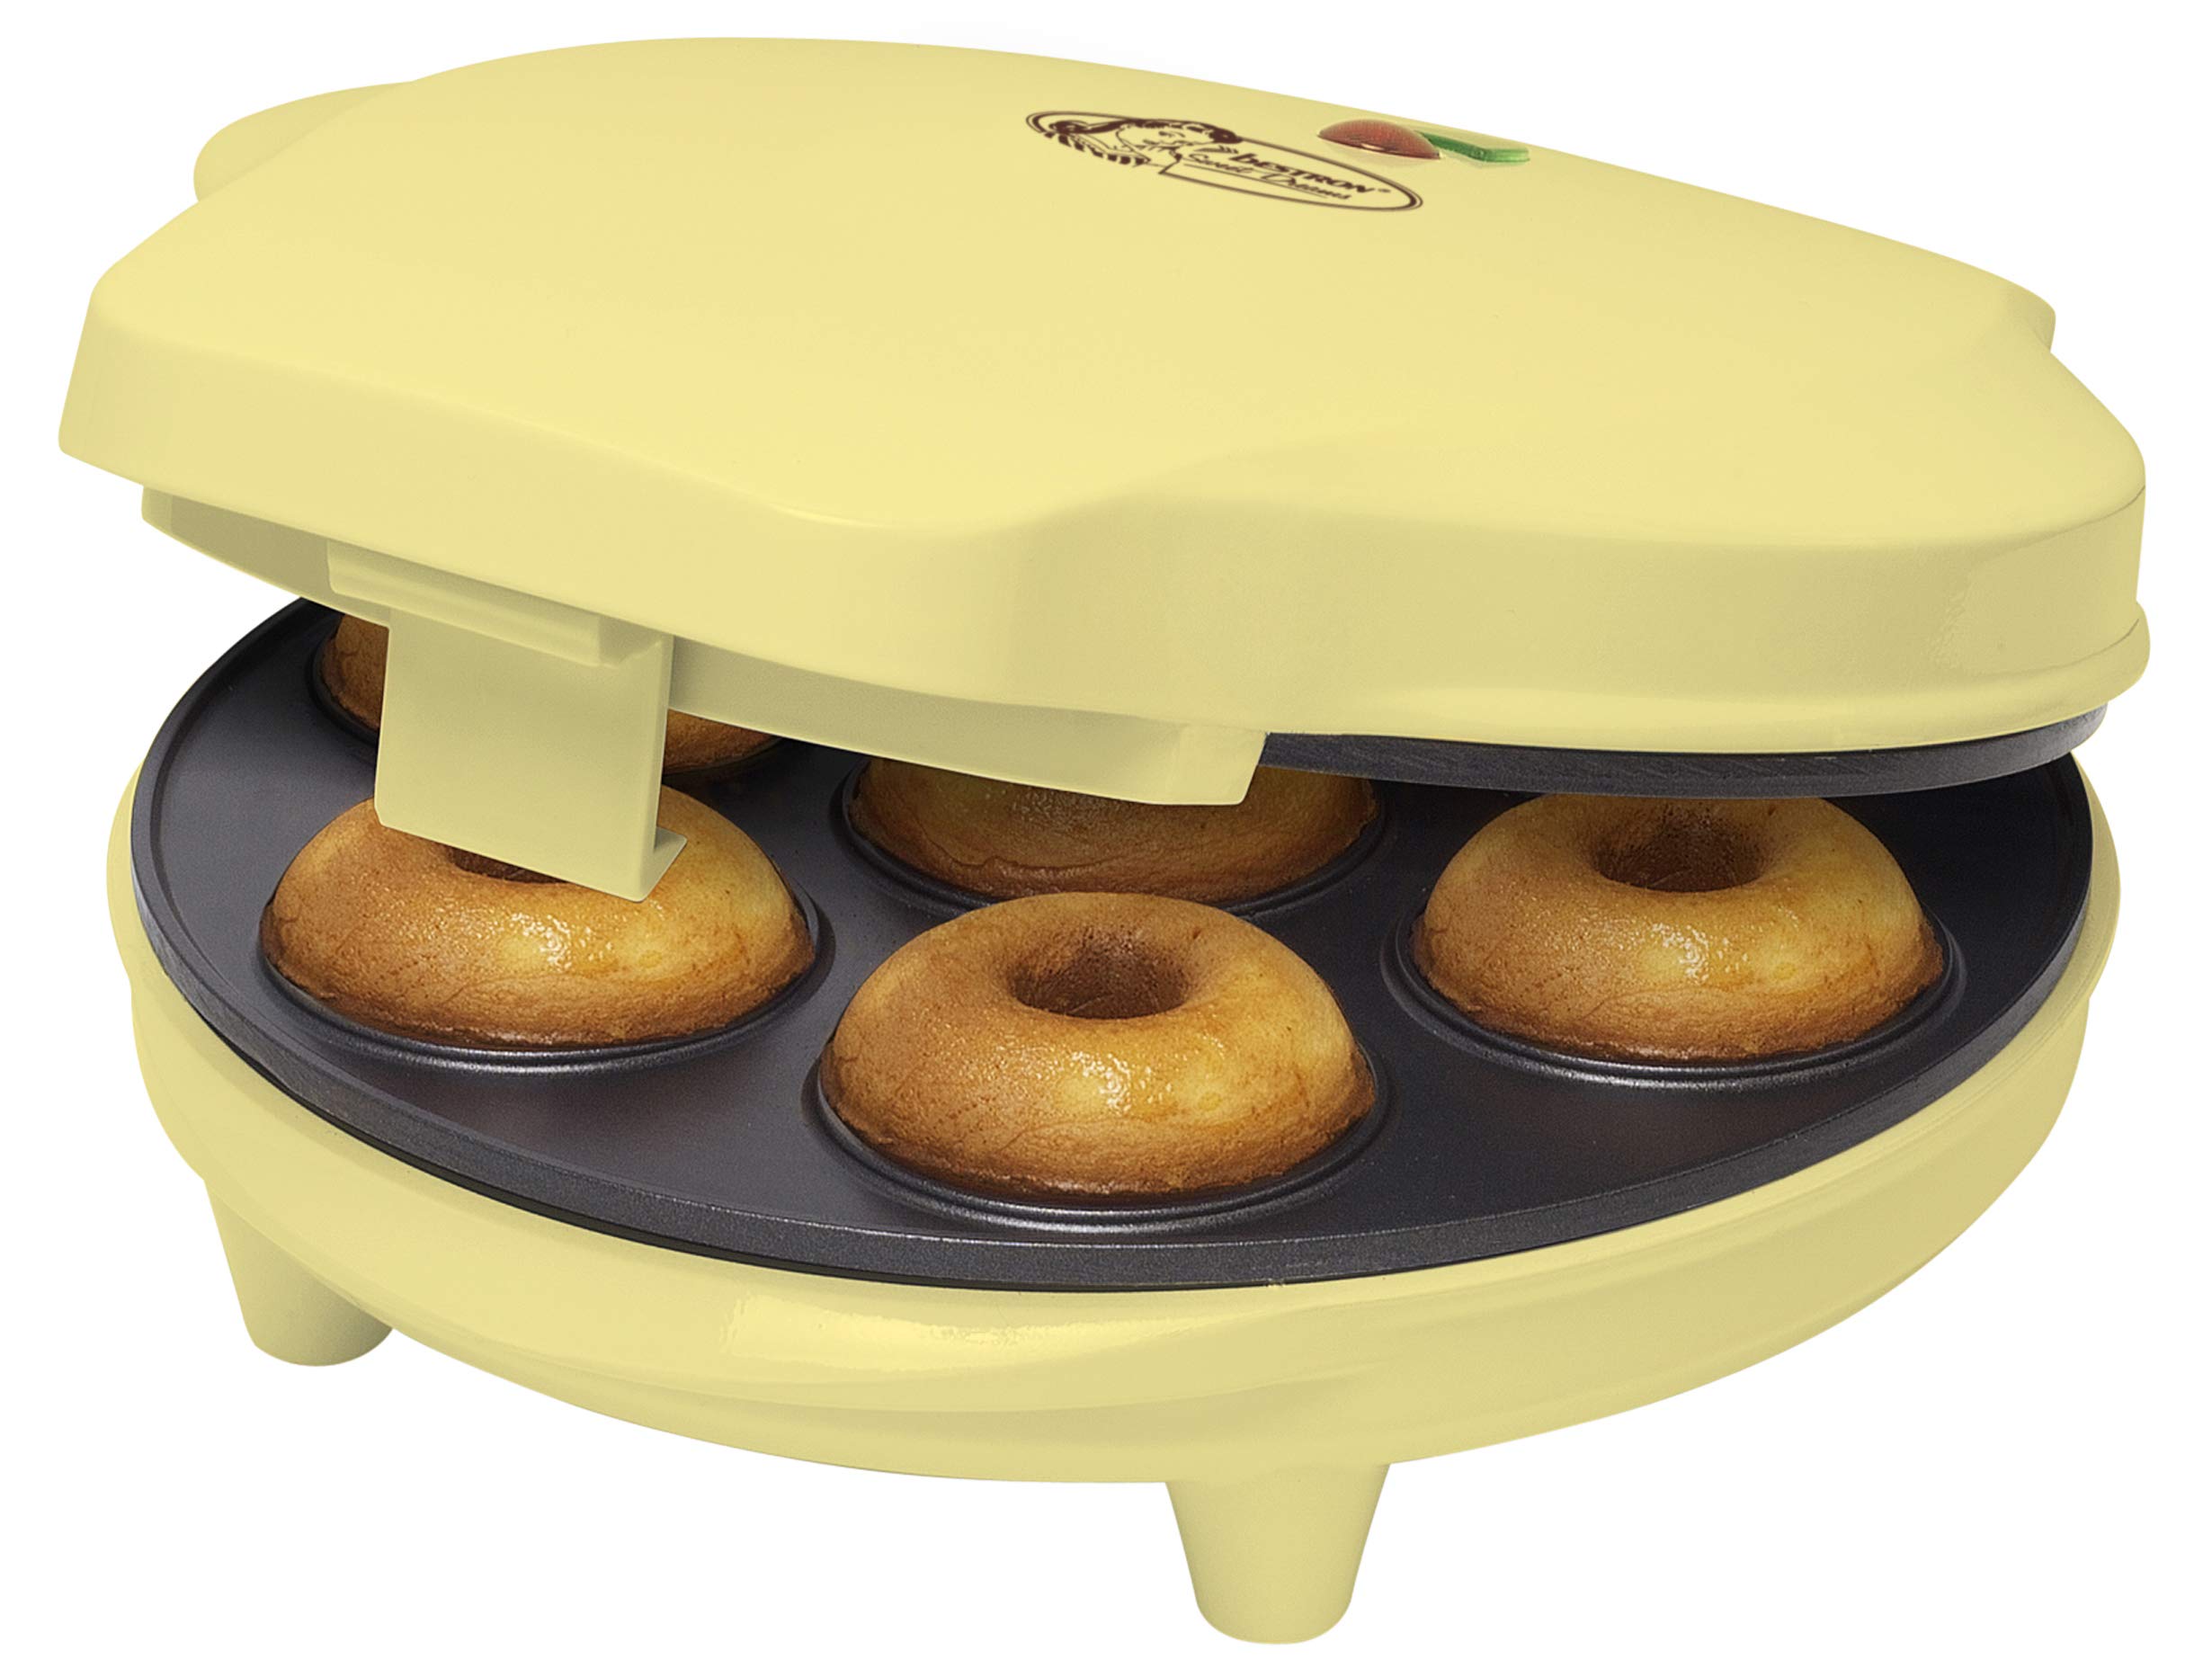 vente chaude Bestron Appareil à Donuts au Design Rétro, Sweet Dreams, Revêtement Anti-Adhésif, 700 Watts, Couleur: Jaune XA4EGjbsz en ligne